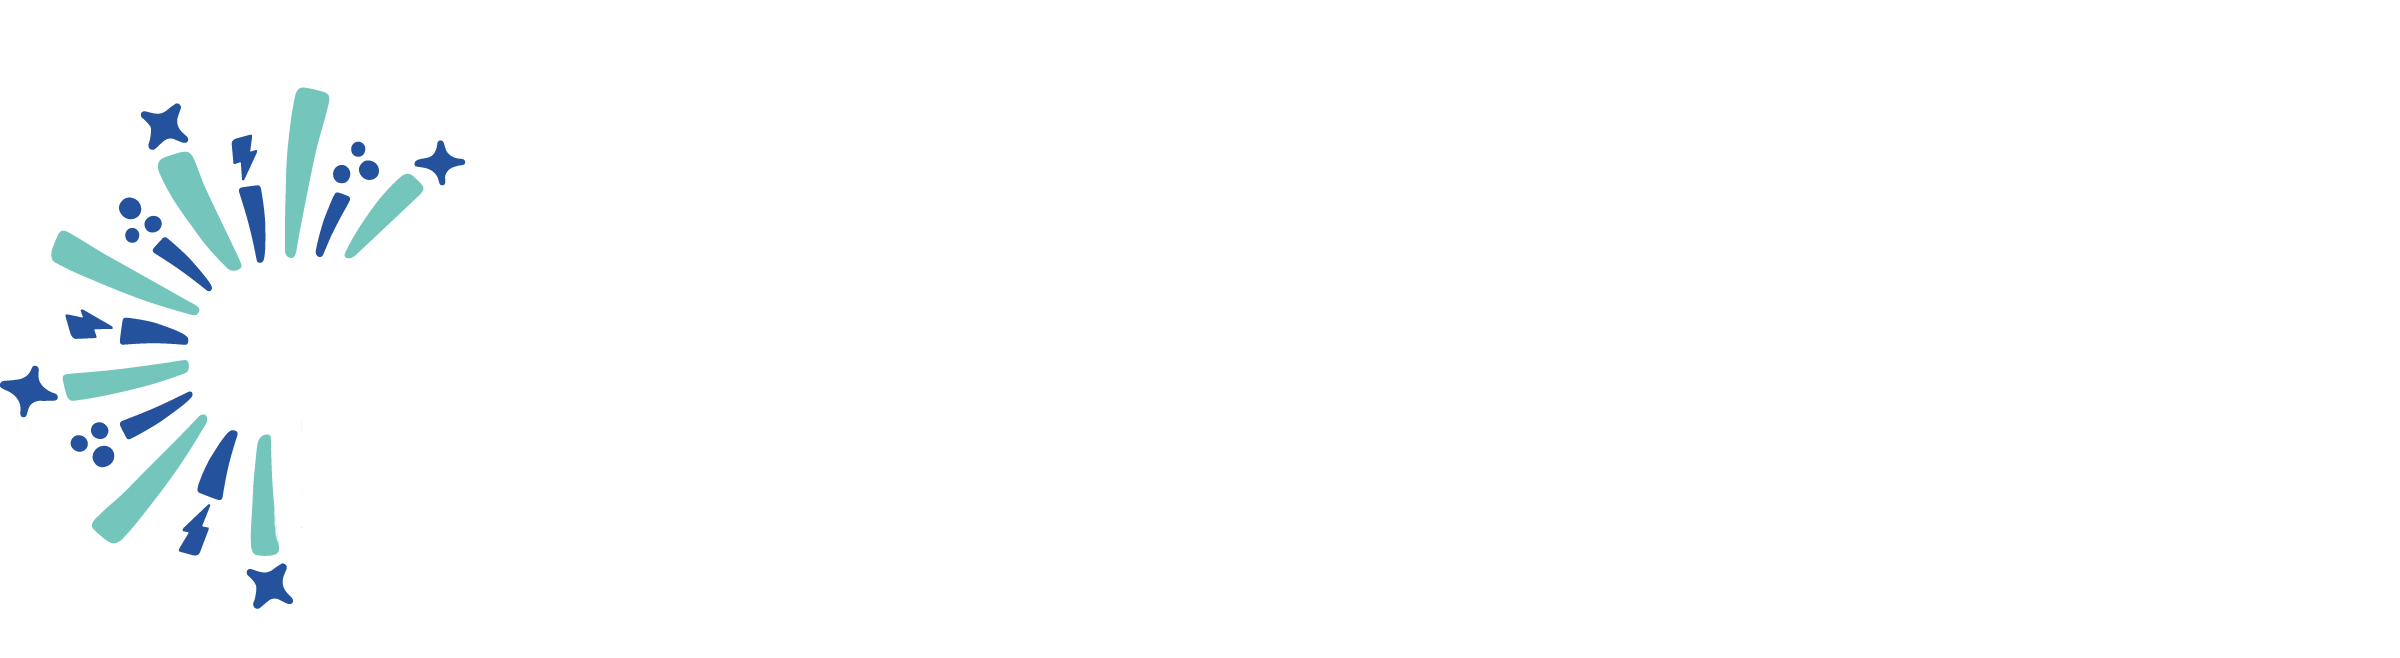 Edinburgh's Hogmanany / GloryDays logo